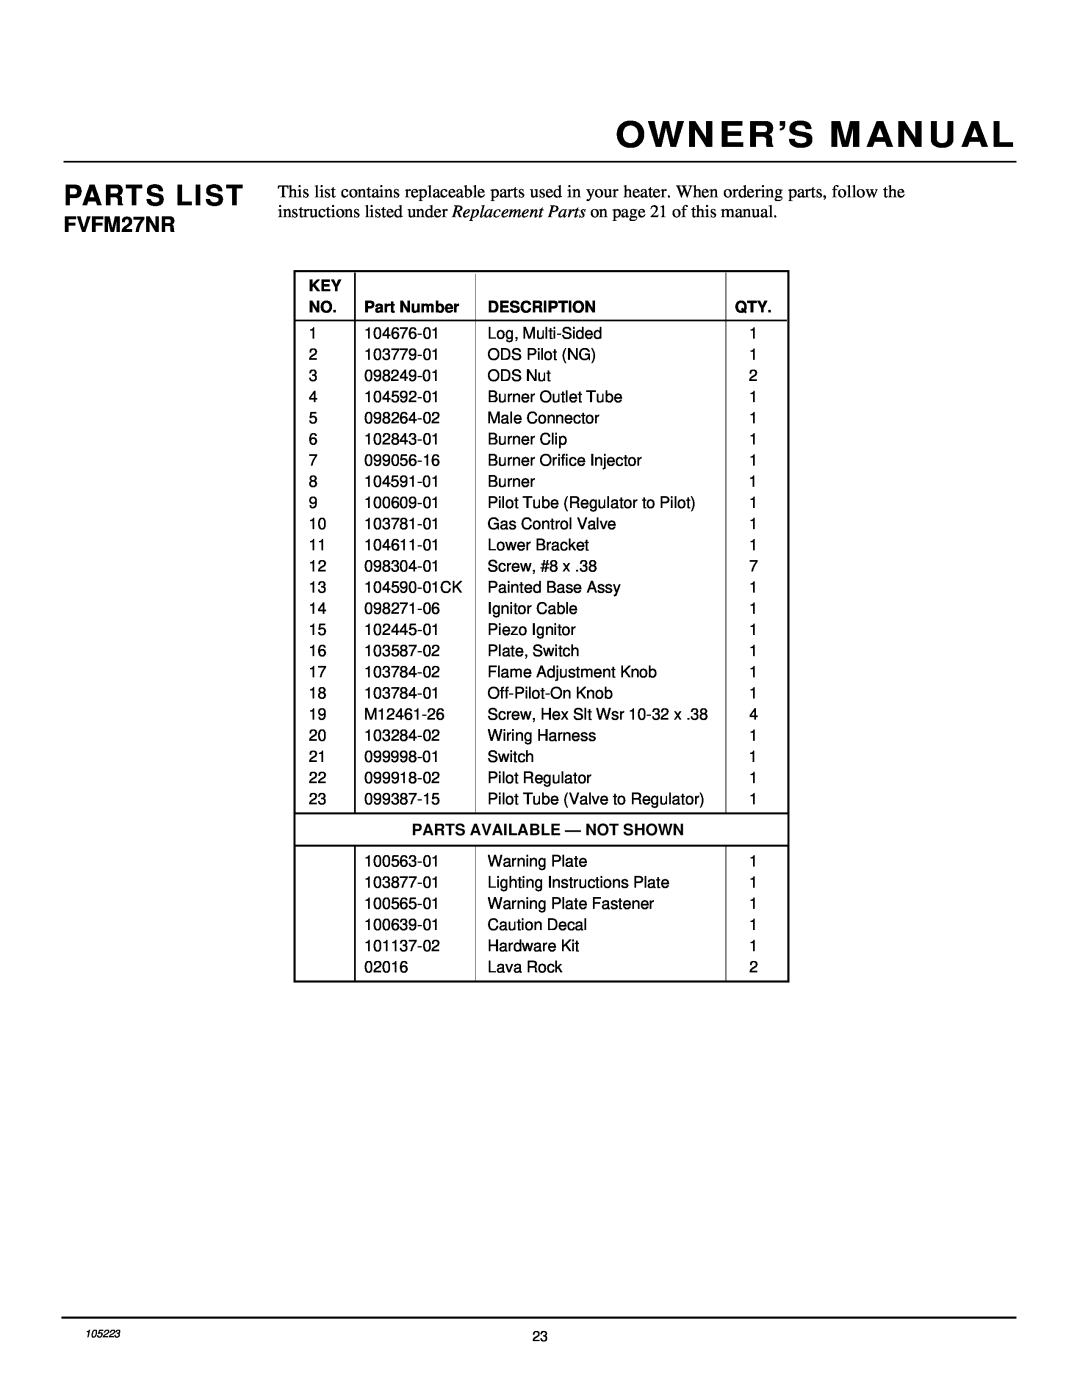 Desa FVFM27NR installation manual Parts List, Part Number, Description, Parts Available - Not Shown 